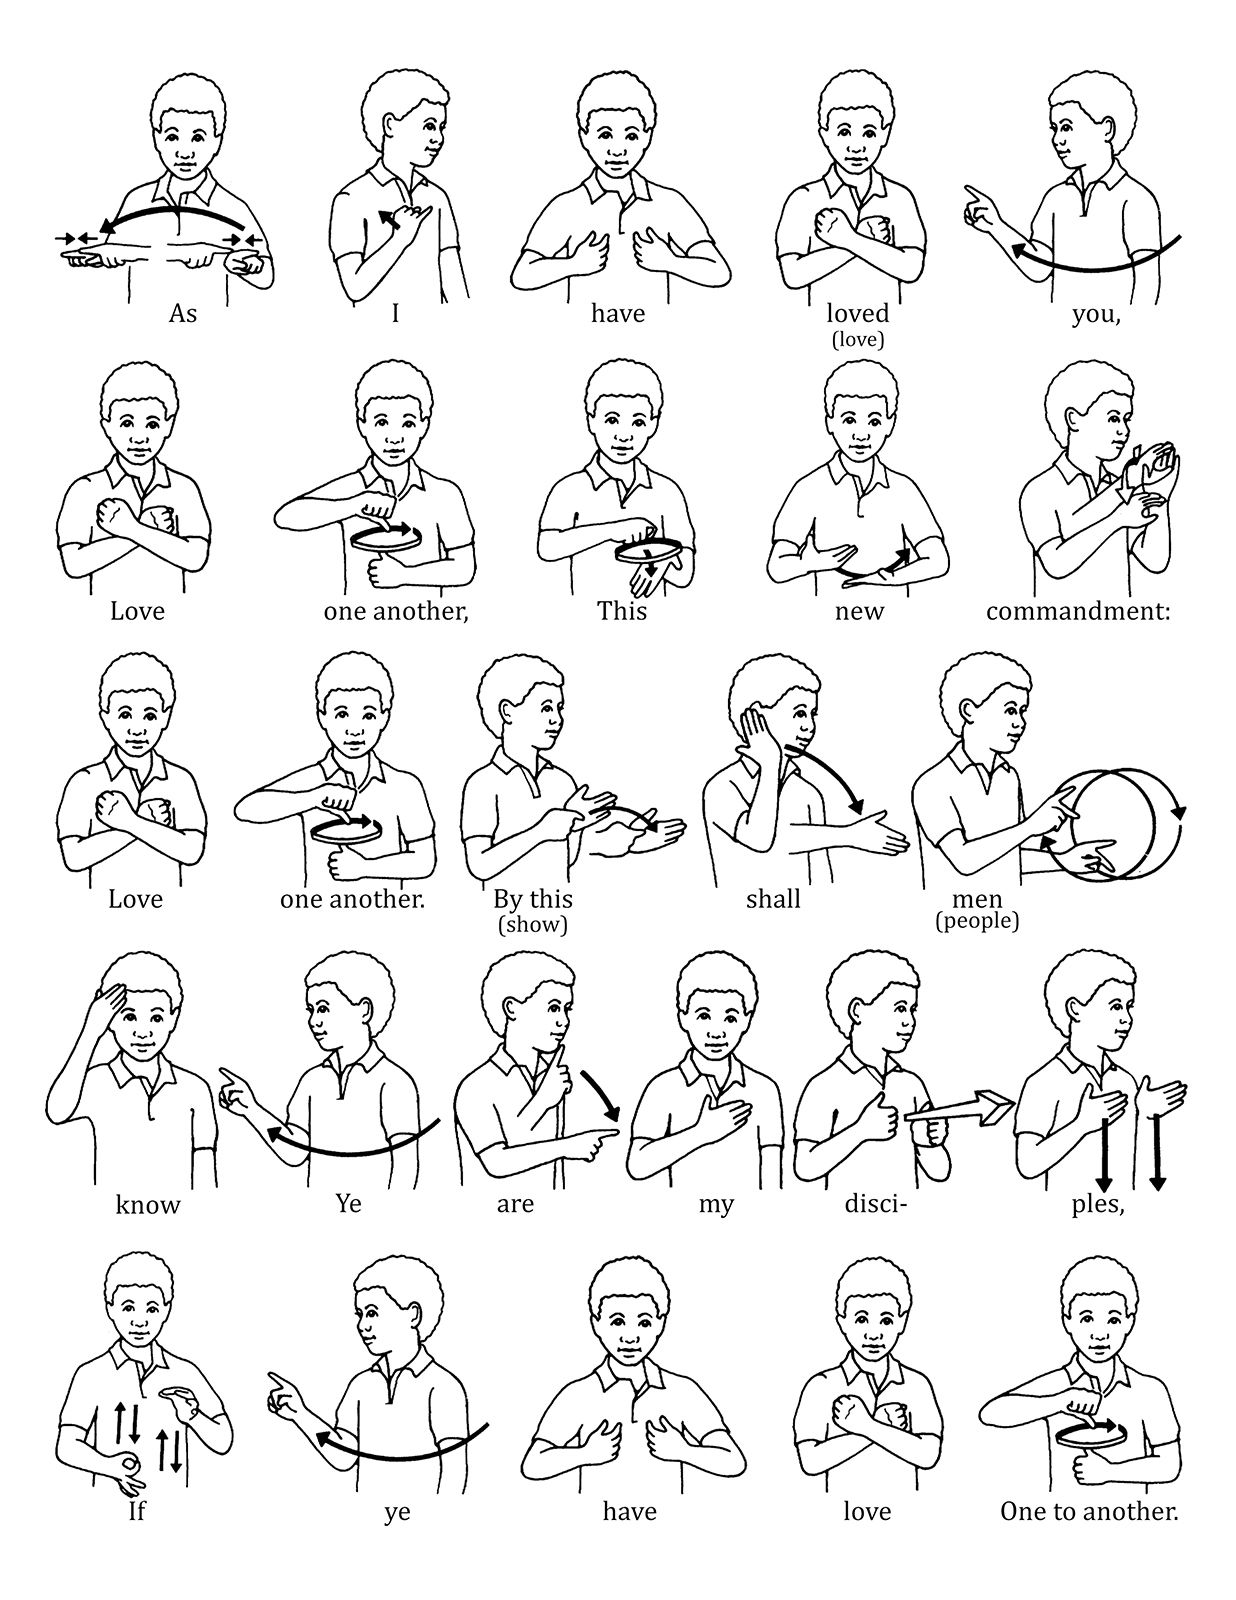 ASL Background. ASL Wallpaper, ASL Social Background and ASL Background